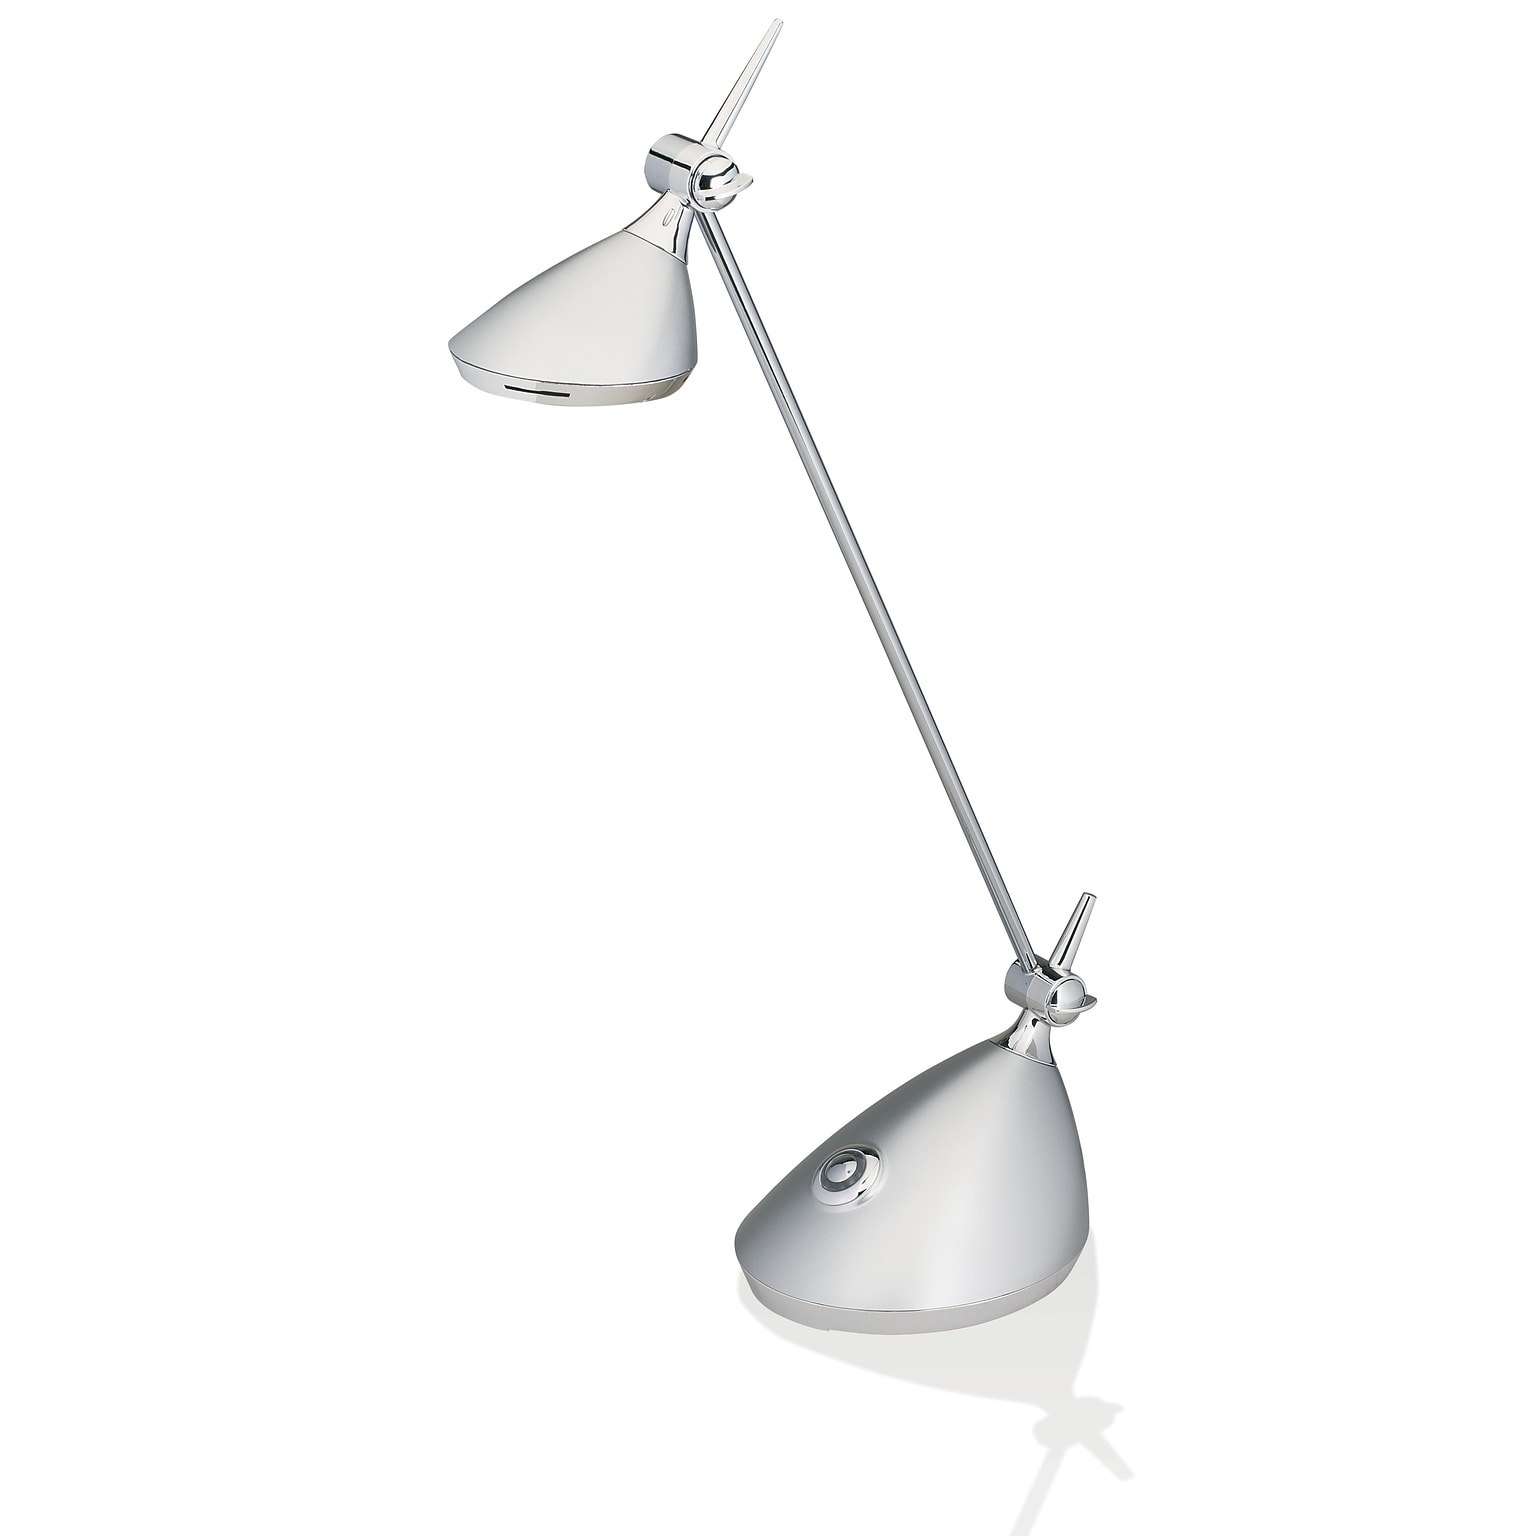 V-LIGHT LED Energy-Efficient Contemporary Desk Lamp, Silver Finish (VSKD104S)